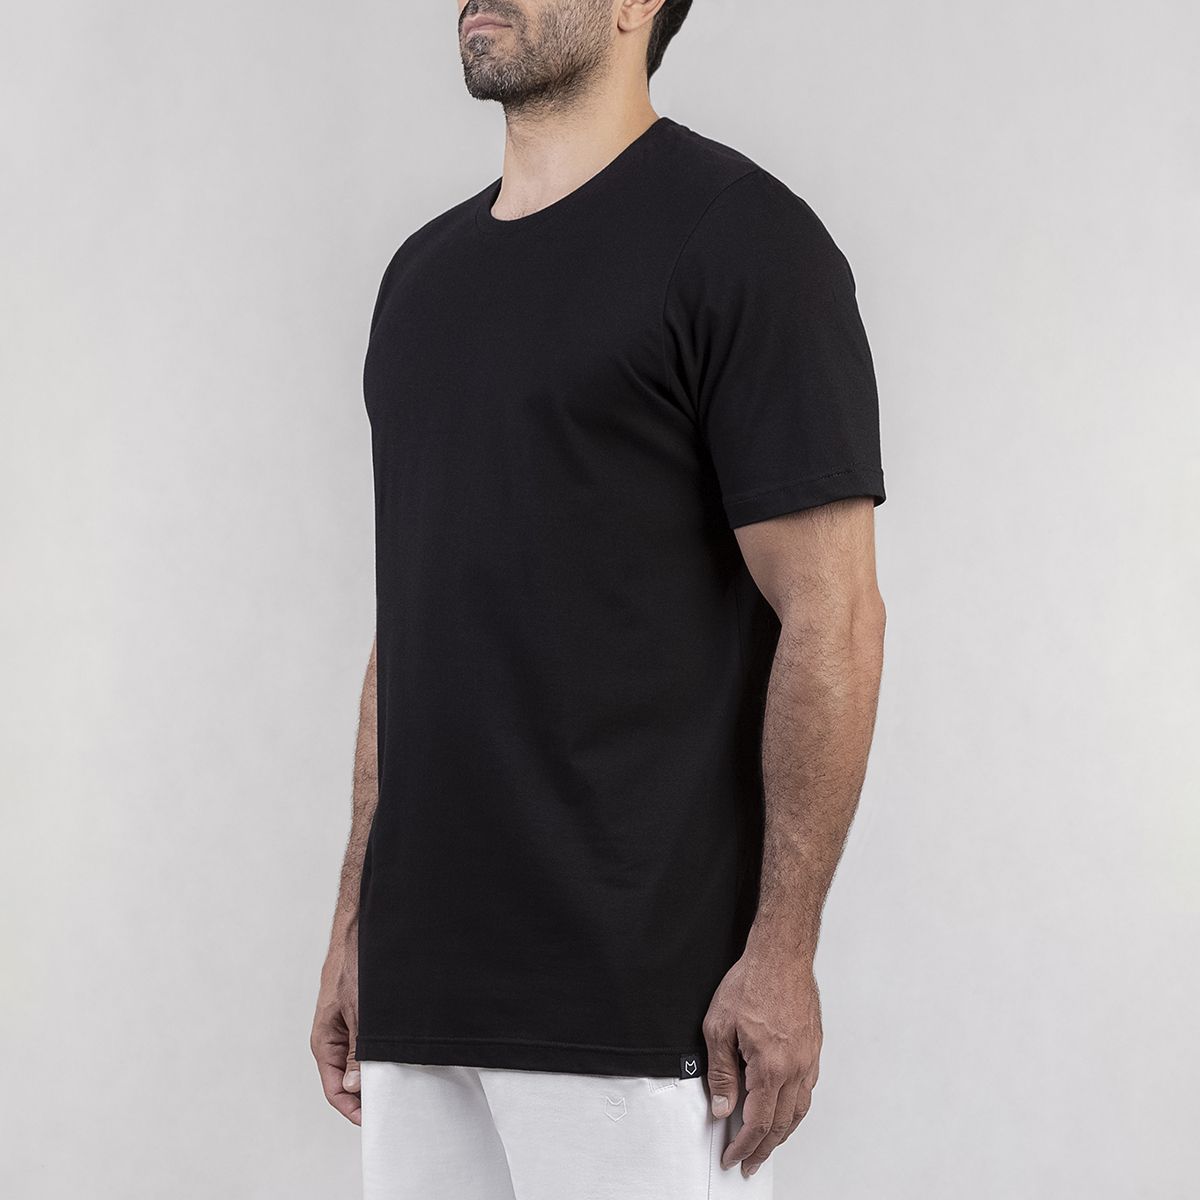 تی شرت ورزشی مردانه مل اند موژ مدل M07782-001 -  - 3